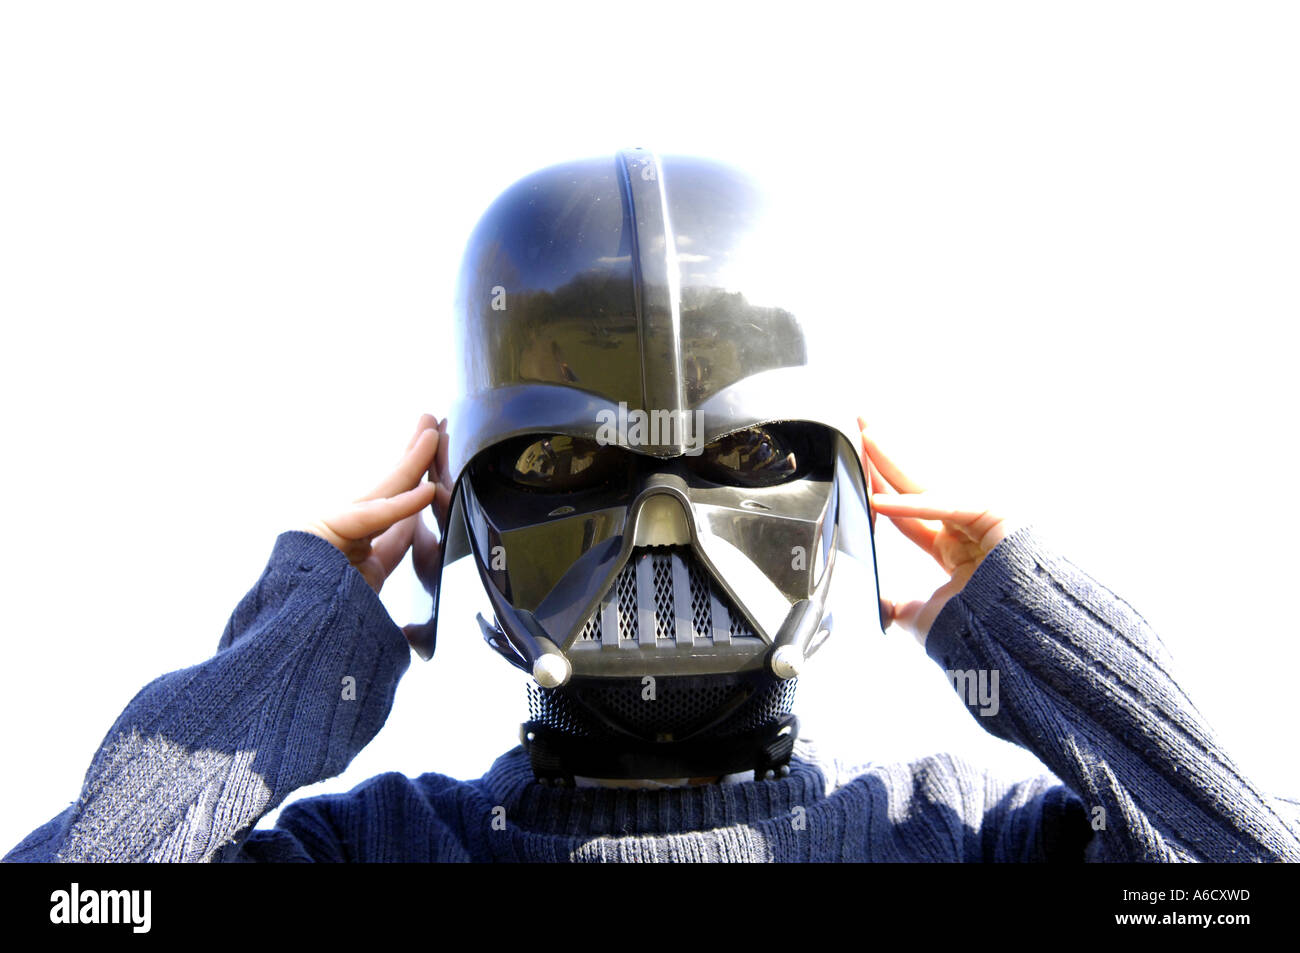 Darth Vader blauer Himmel Kunststoff Helm Kind Kind Rollenspiel Bösewicht  Star Wars Farbe Farbe der dunkle Herrscher des Reiches faschistischen  Charakter Stockfotografie - Alamy